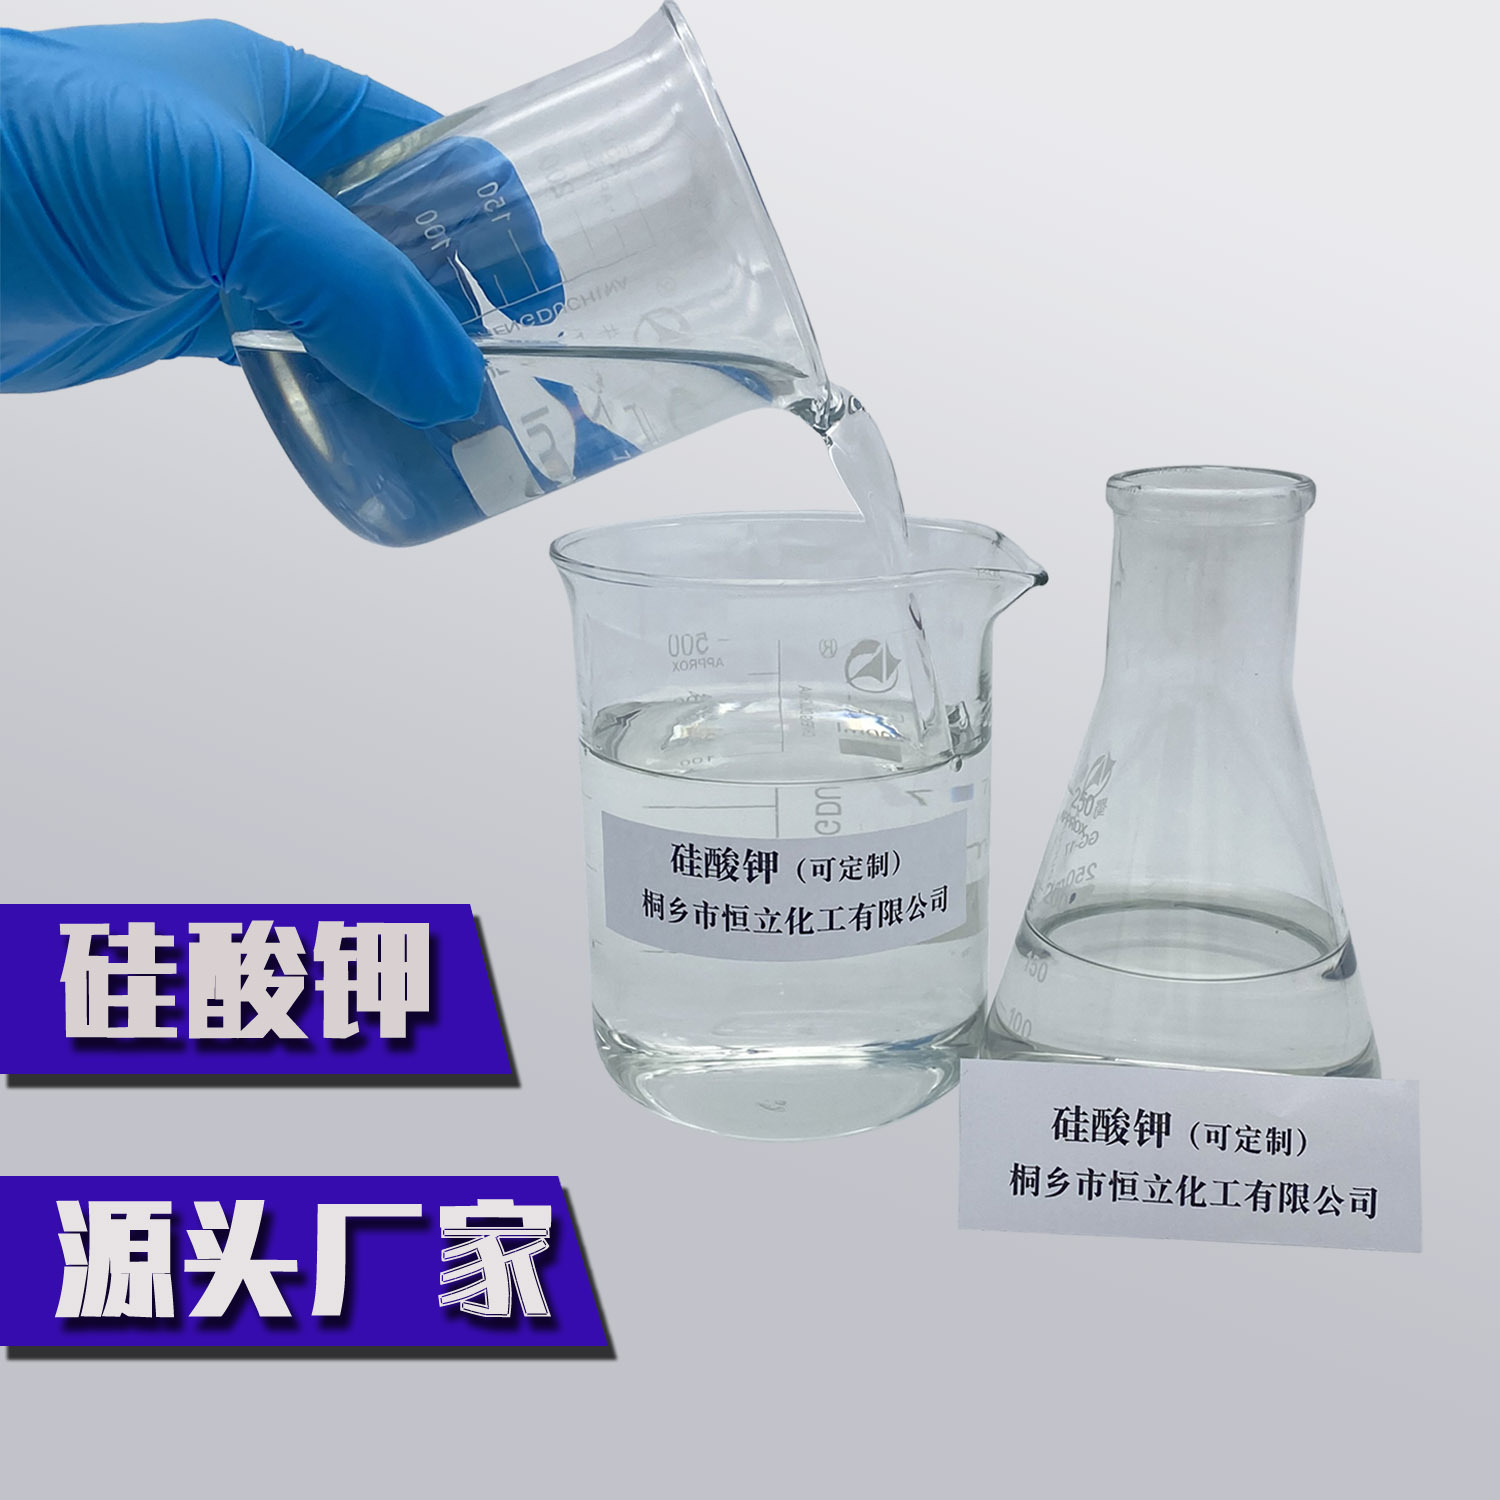 优质硅酸钾厂家现货直销 纯净工业级液体钾水玻璃 提供多种模数